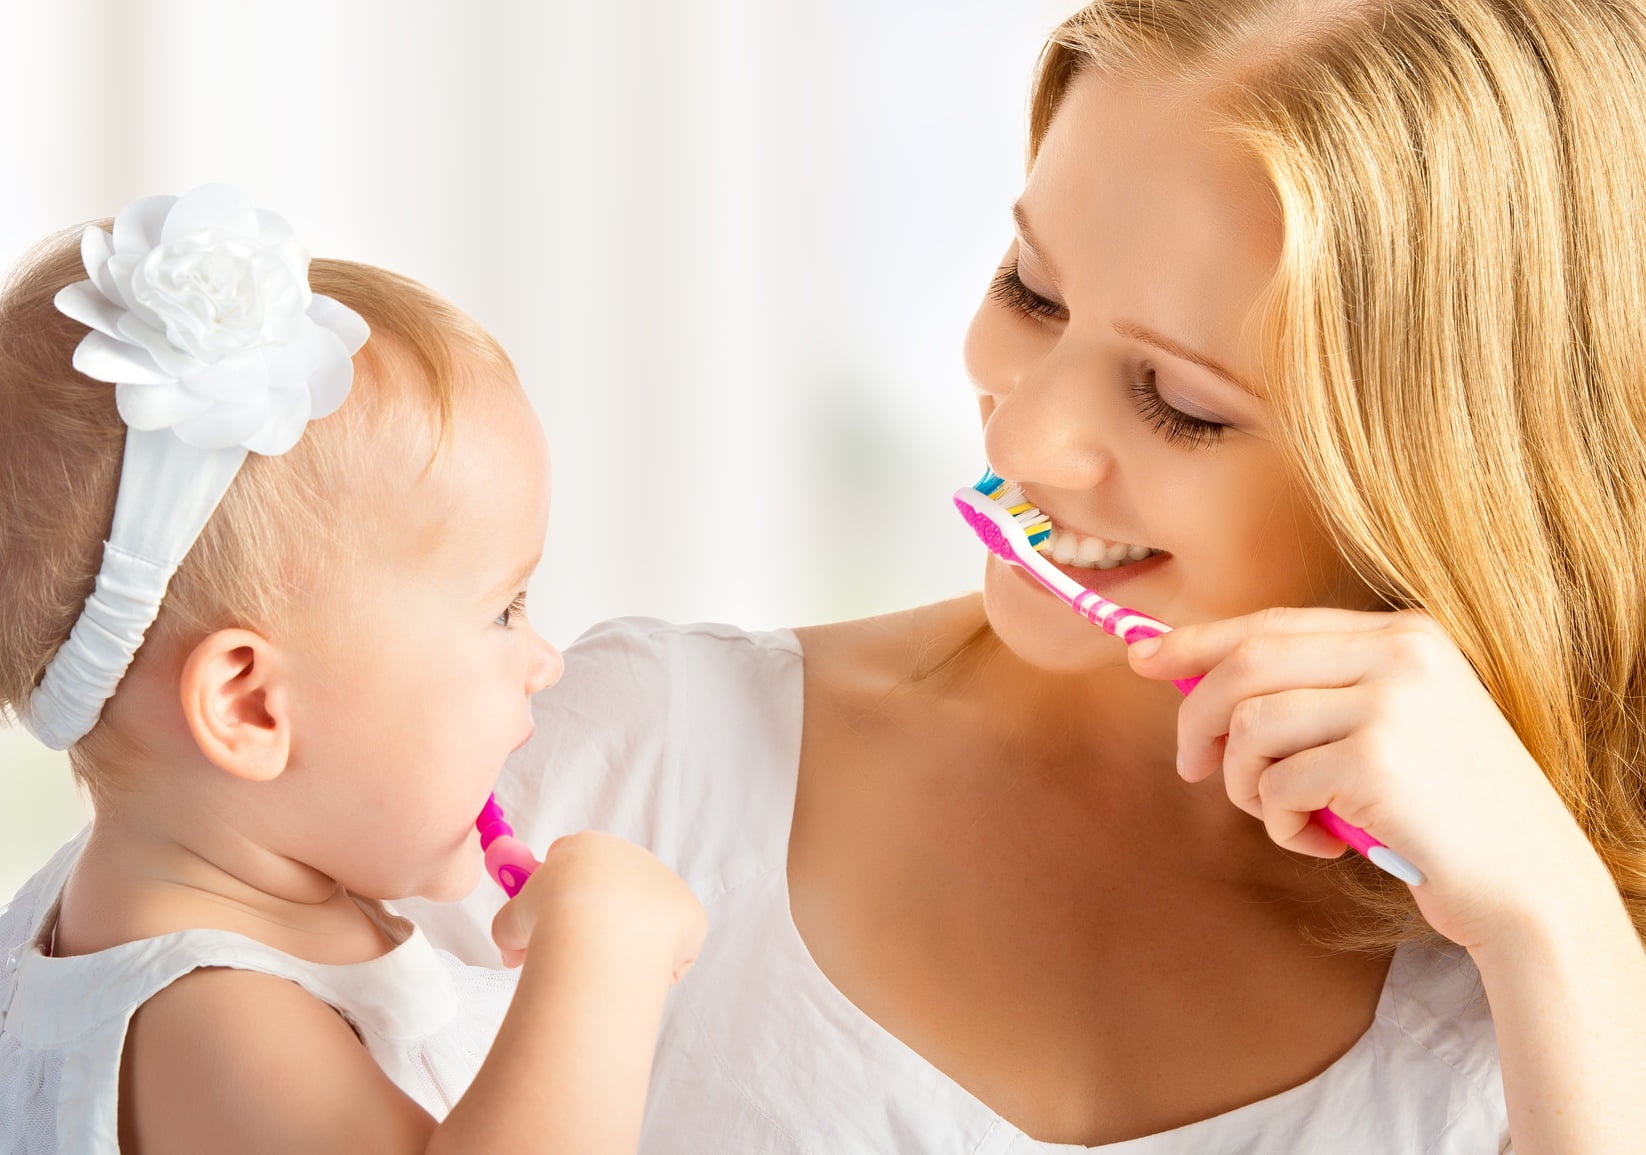 Tại sao nên lấy cao răng cho trẻ ?